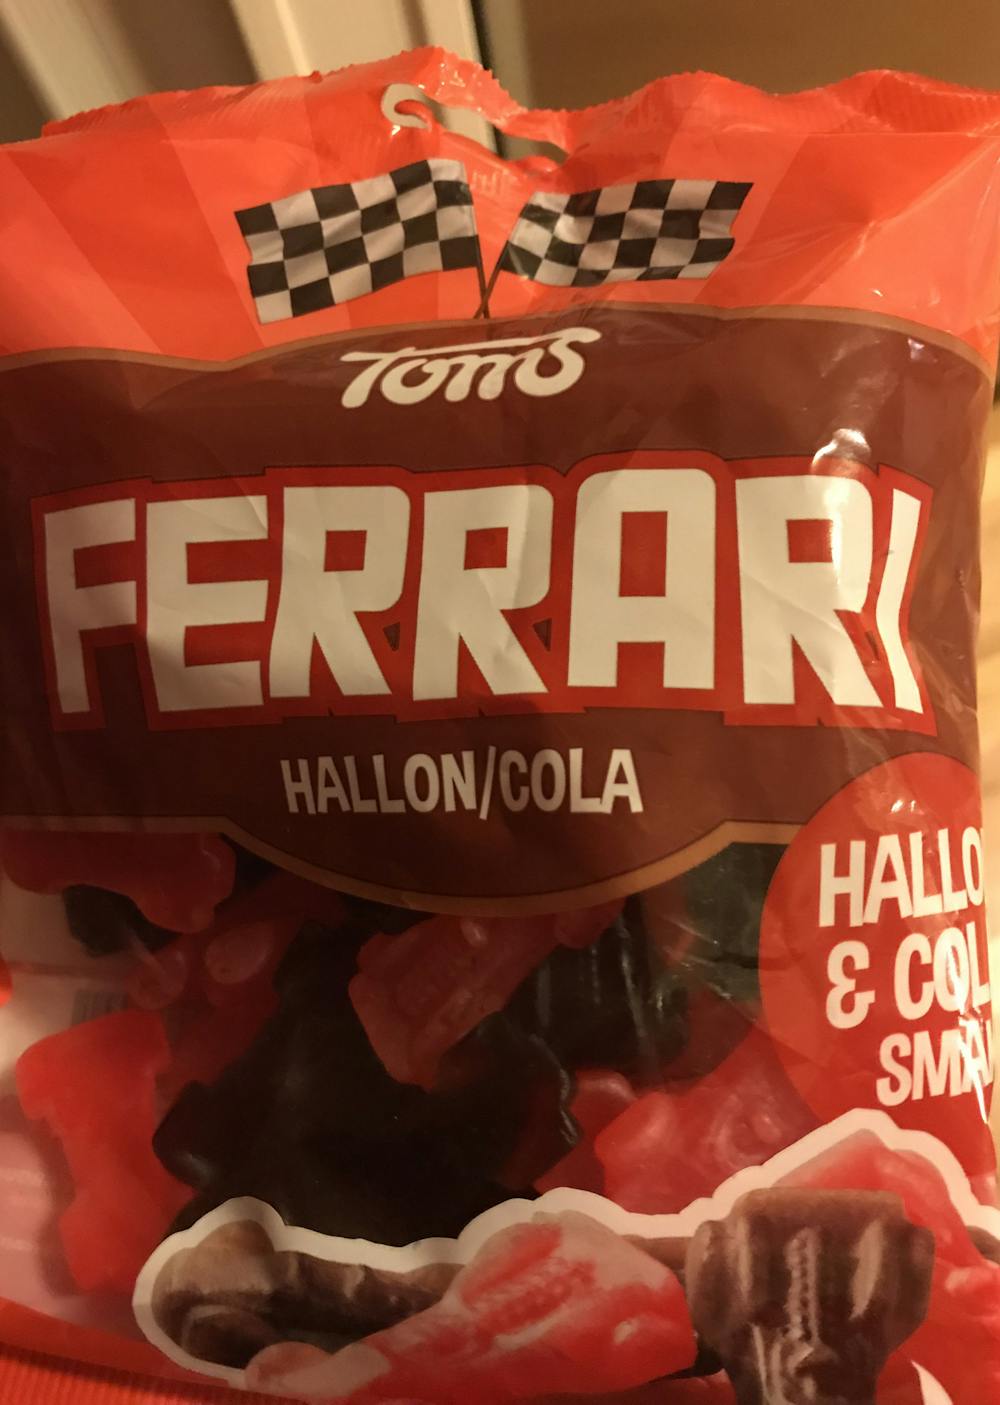 Ferrari, hallon/cola, Toms